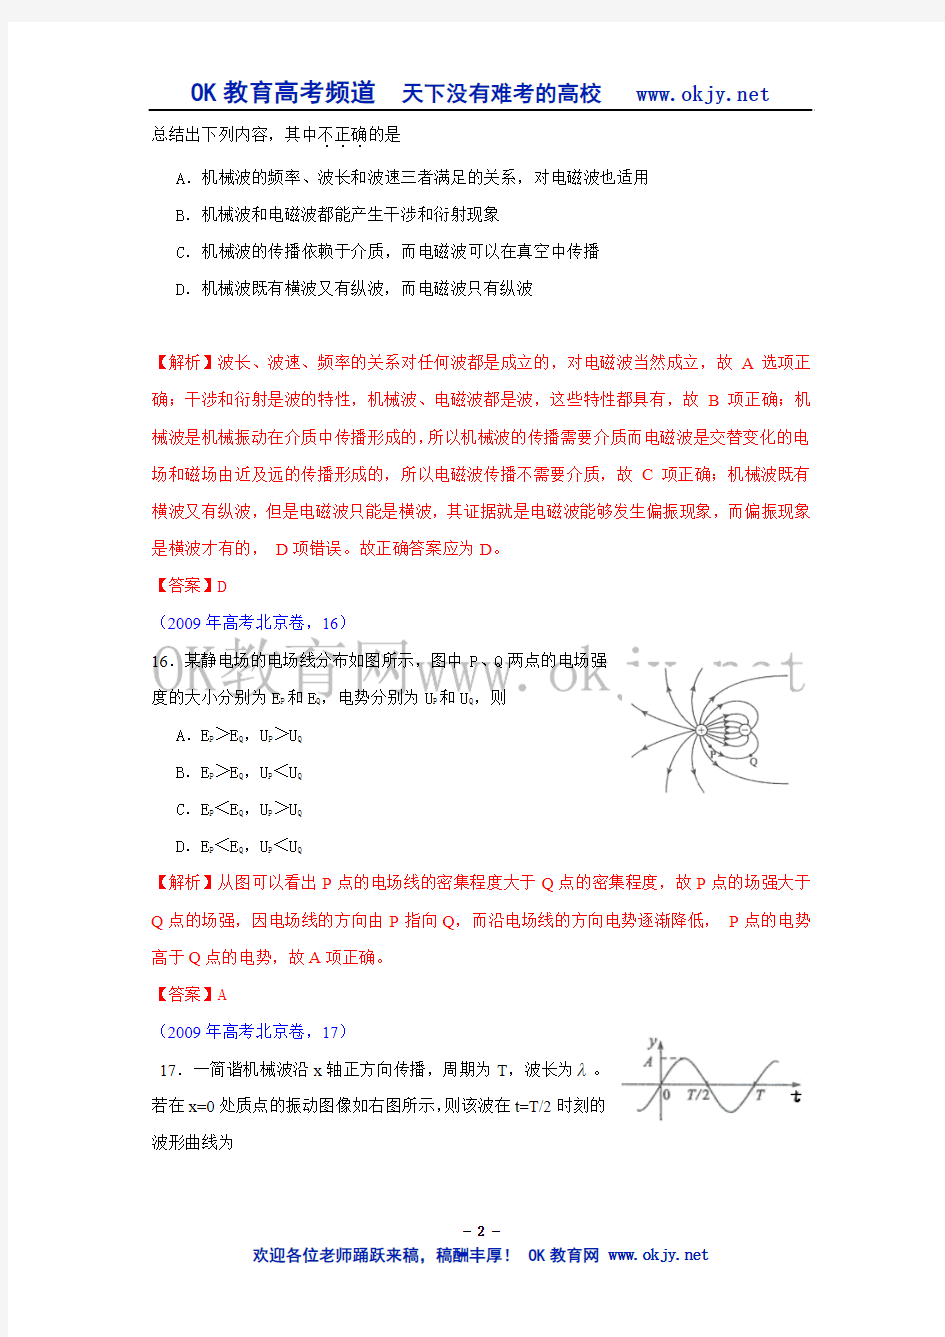 2009年高考试题——理综物理部分(北京卷)解析版